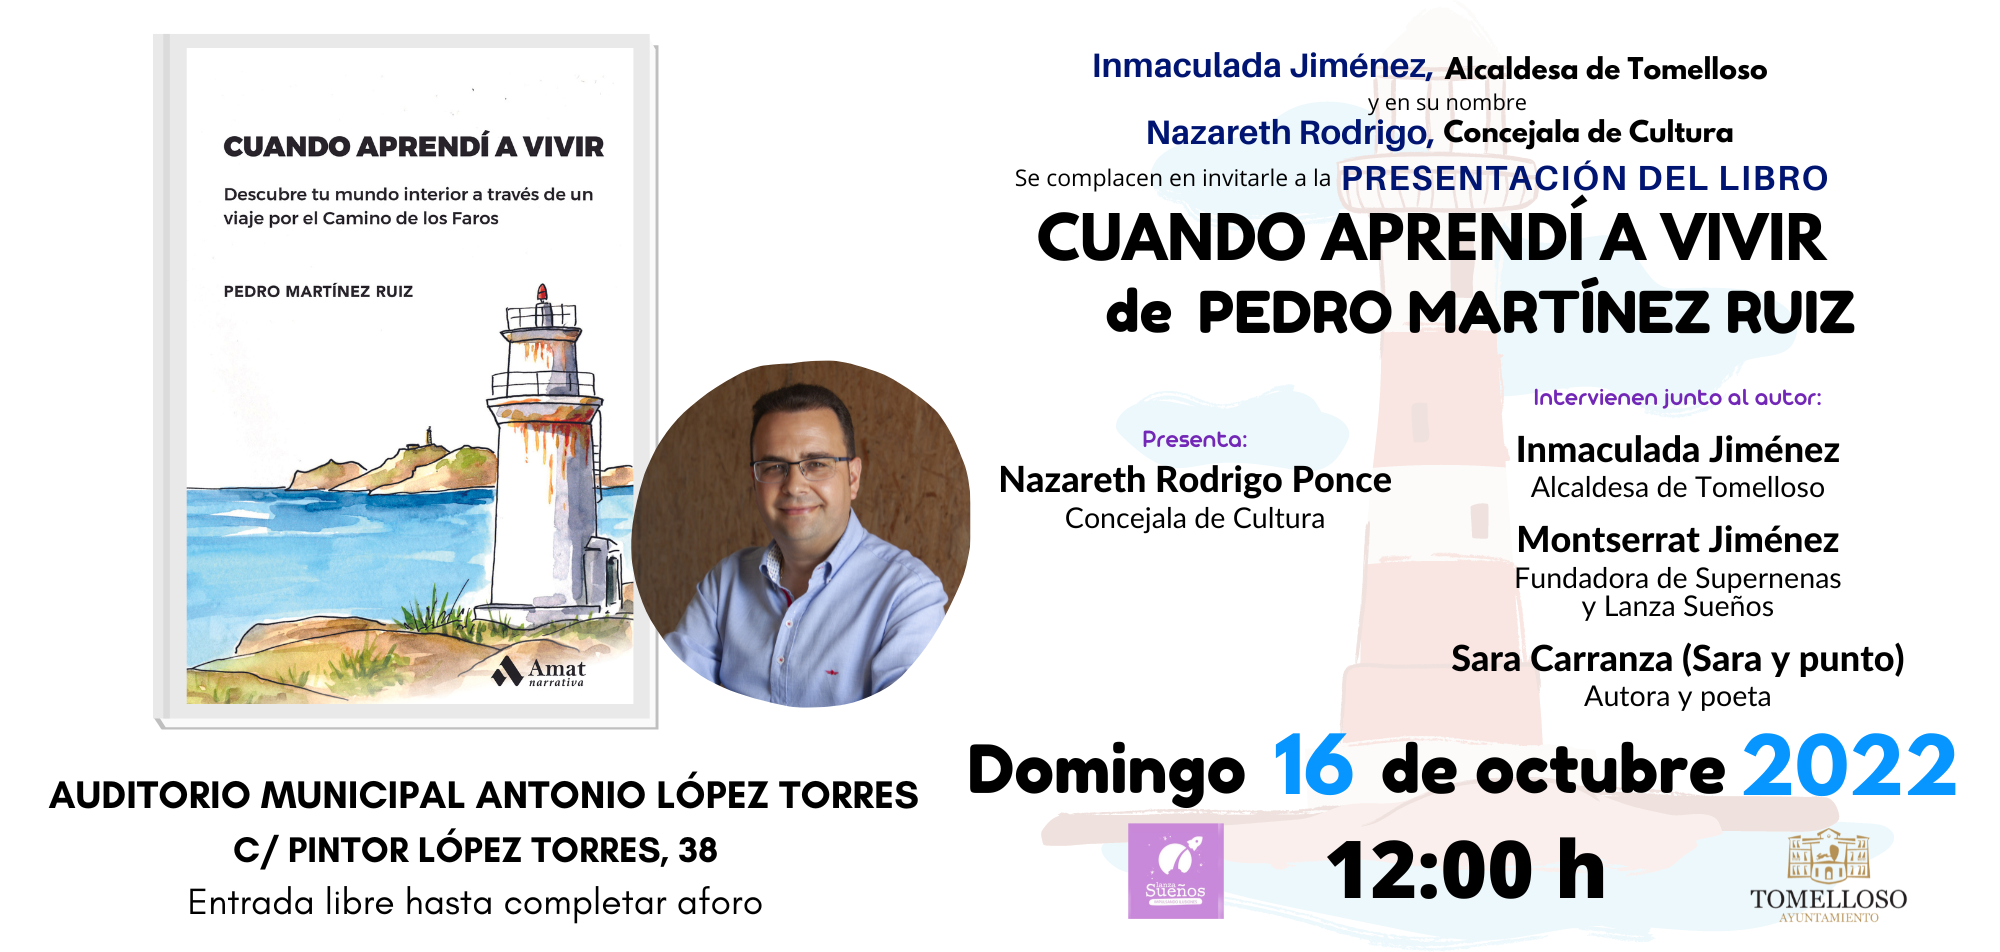  El libro "Cuando aprendí a vivir" del autor Pedro Martínez Ruiz será presentado en Tomelloso este próximo 16 de octubre